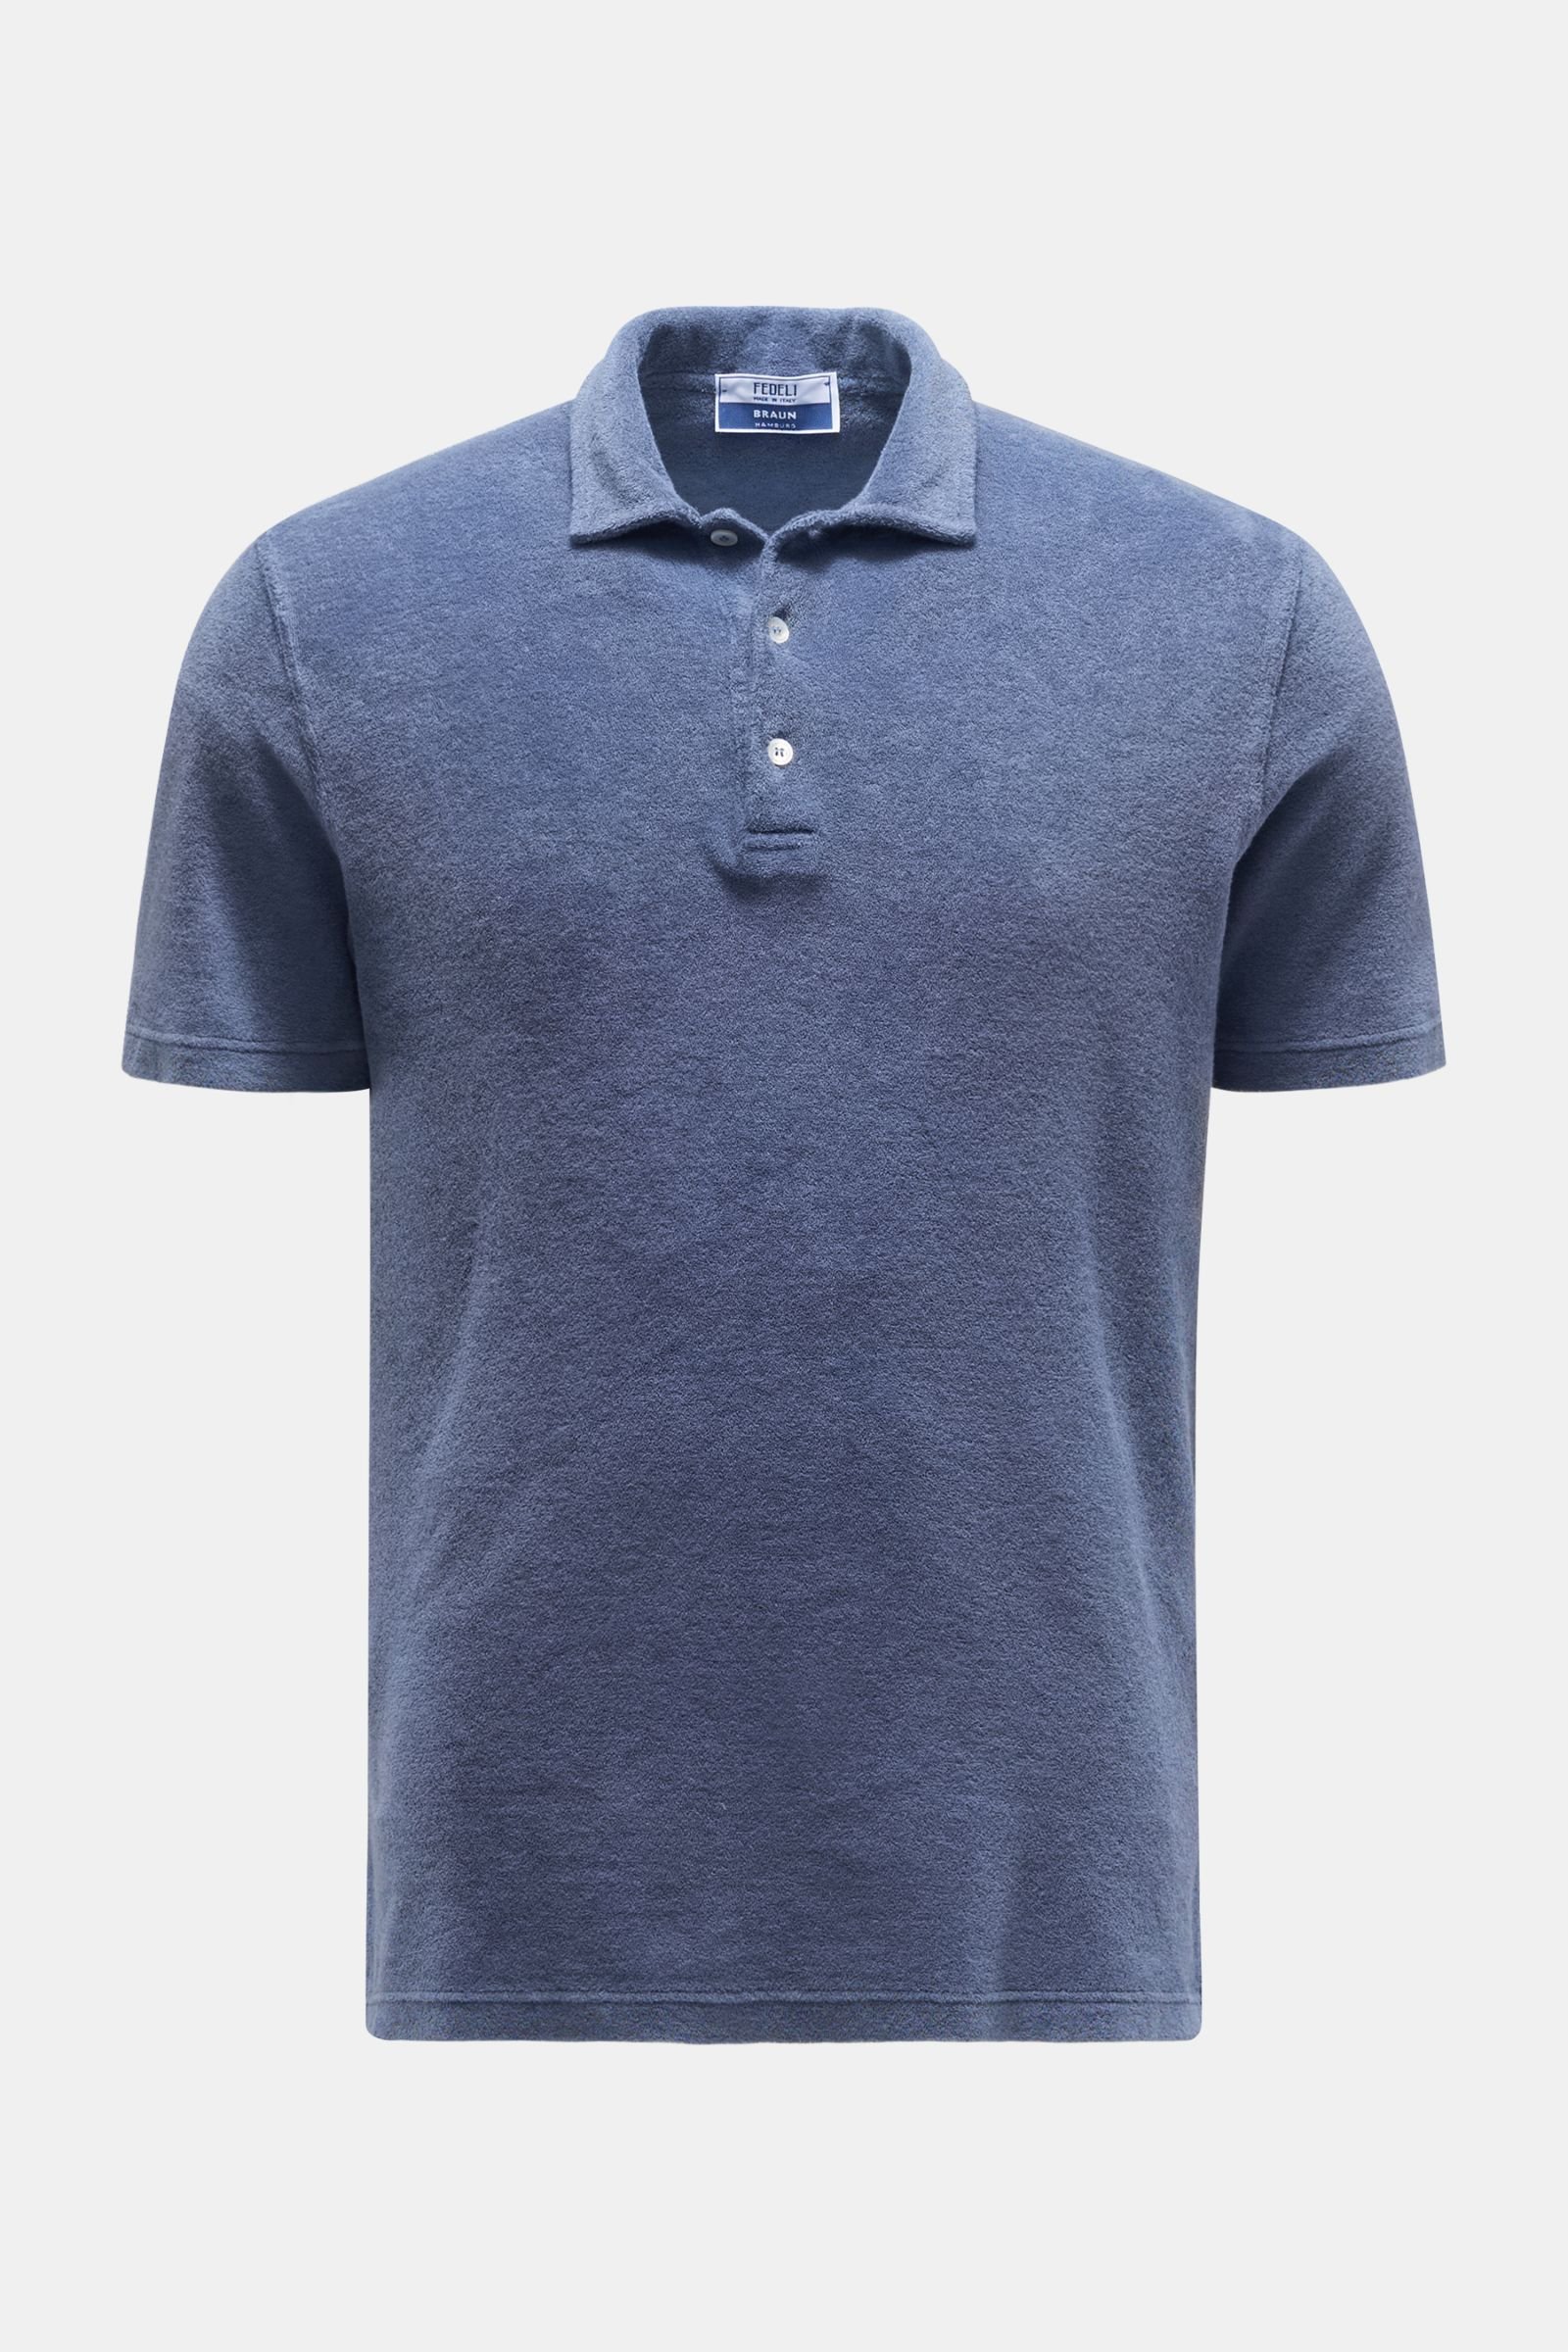 Terry polo shirt ‘Terry Mondial’ grey-blue